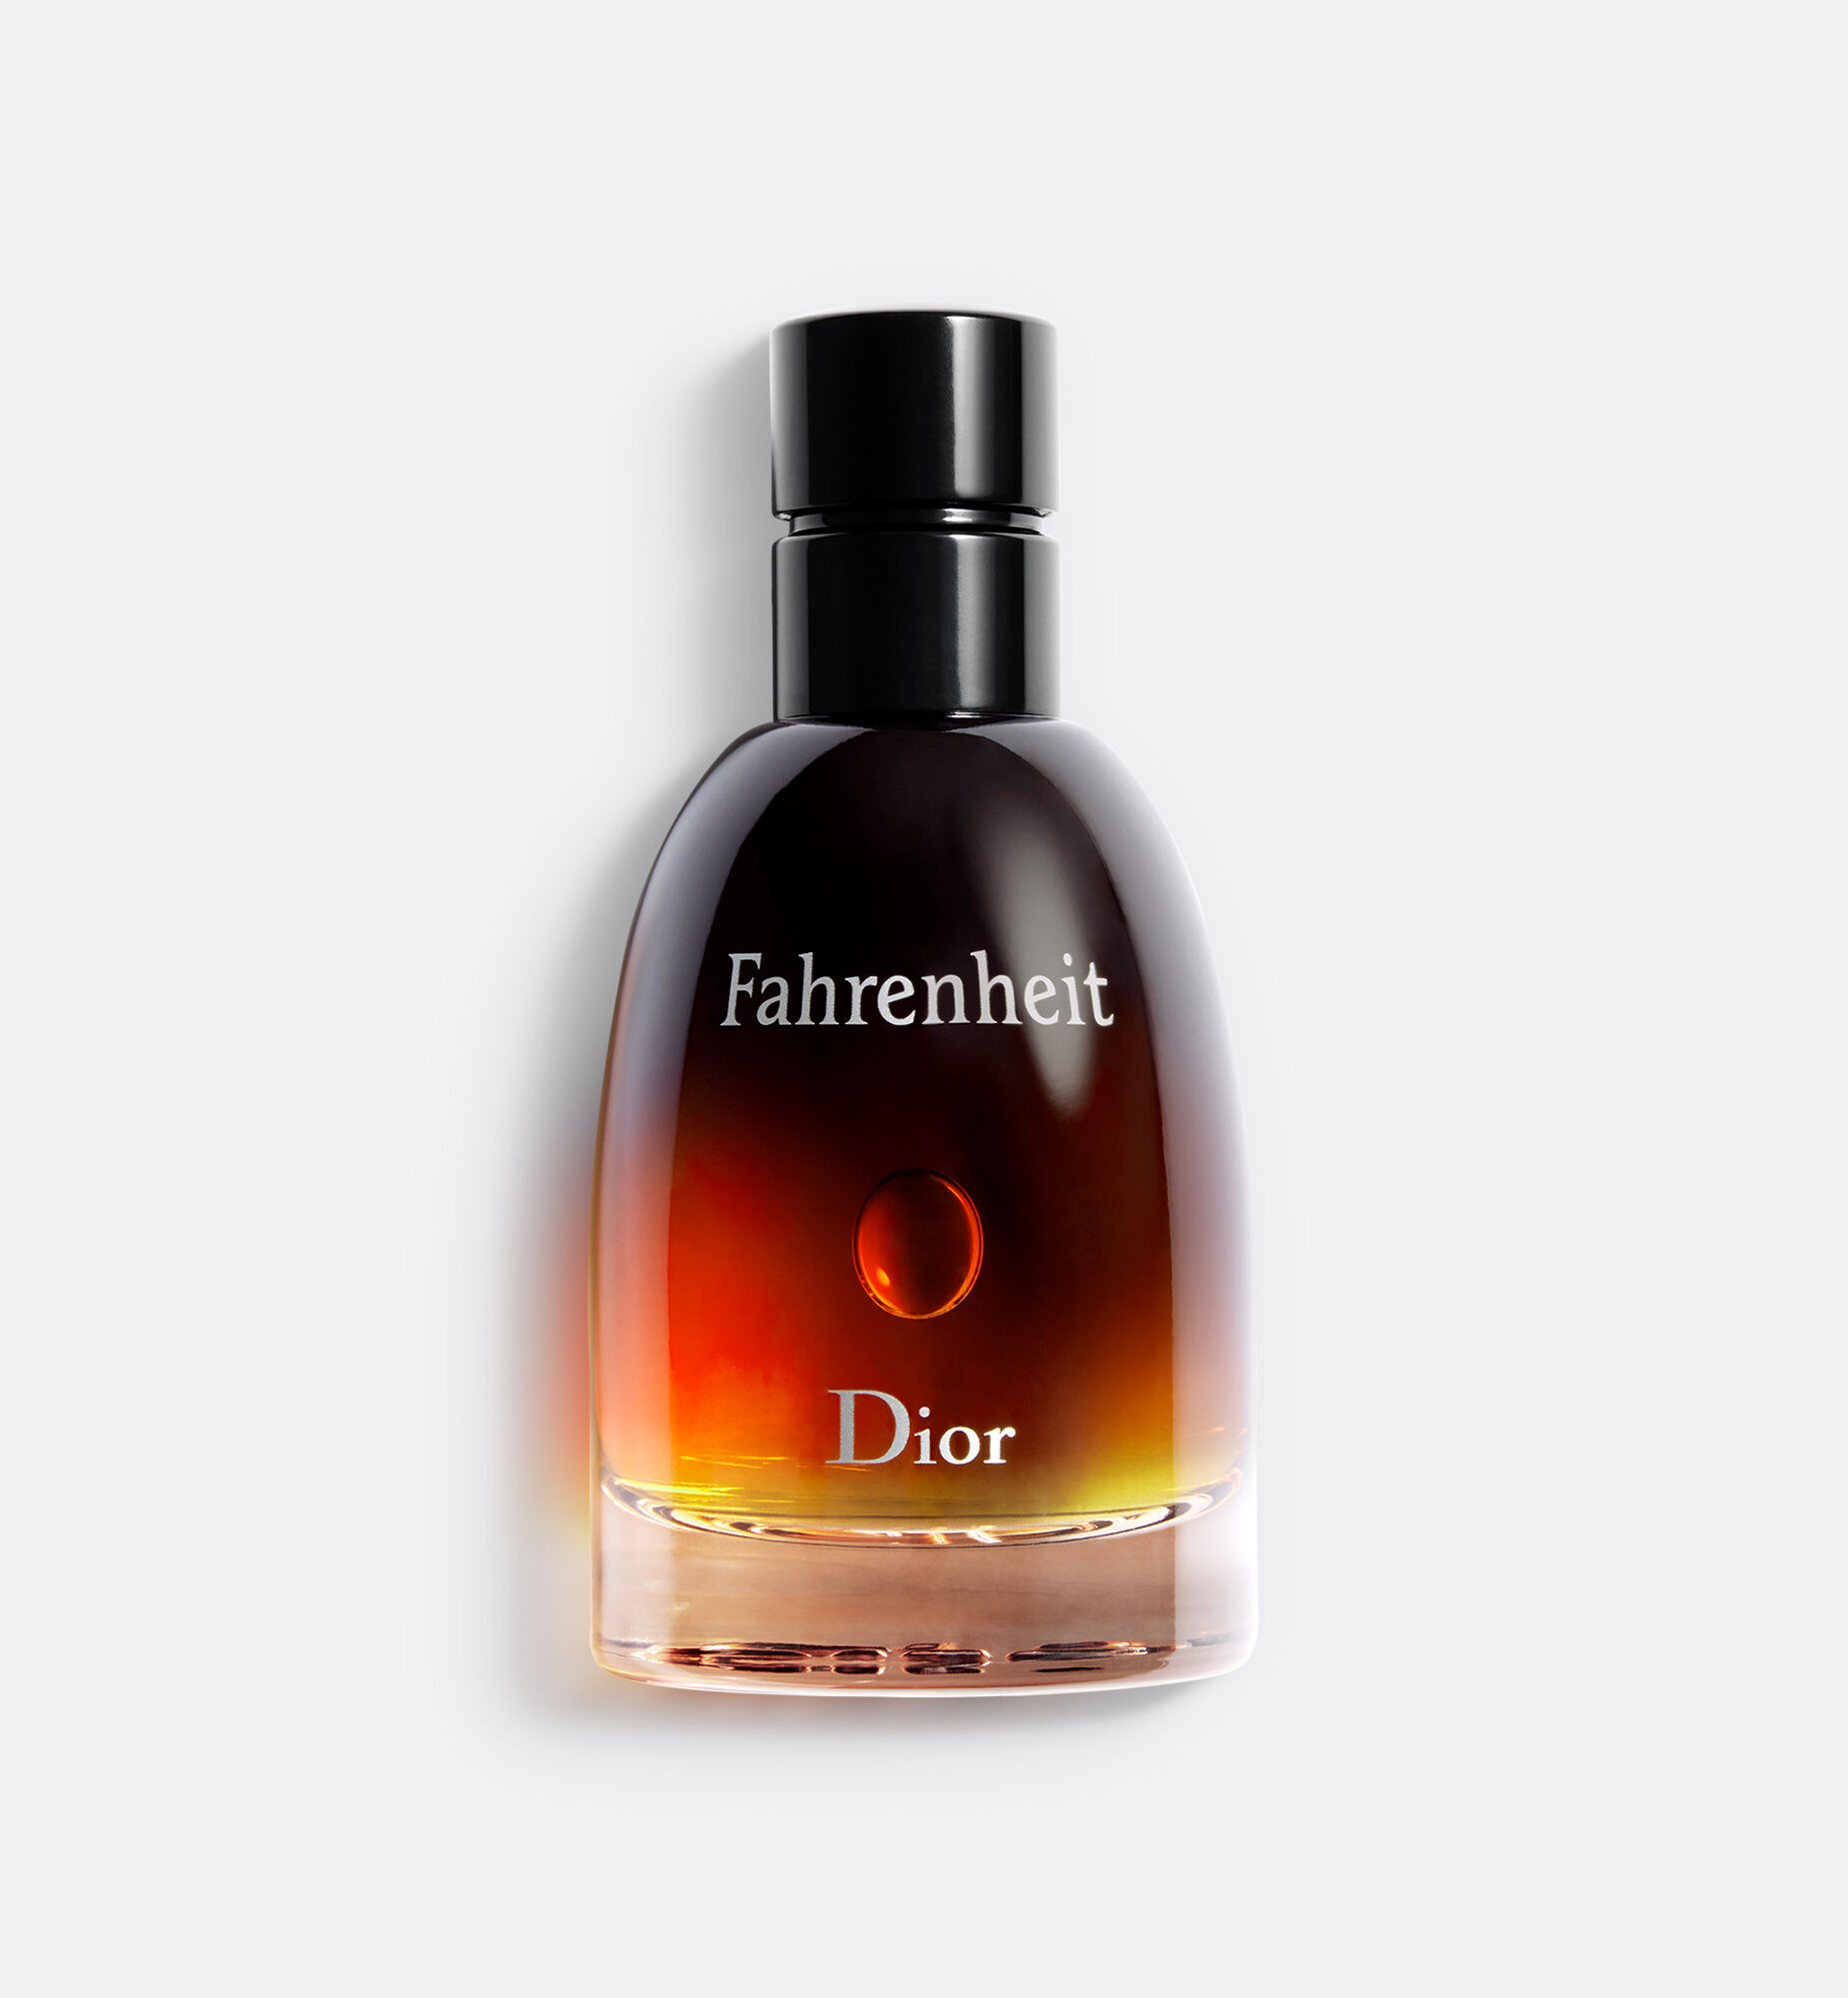 Купить духи Christian Dior Fahrenheit Parfum  мужская туалетная вода и  парфюм Кристиан Диор Фаренгейт Парфюм  цена и описание аромата в  интернетмагазине SpellSmellru